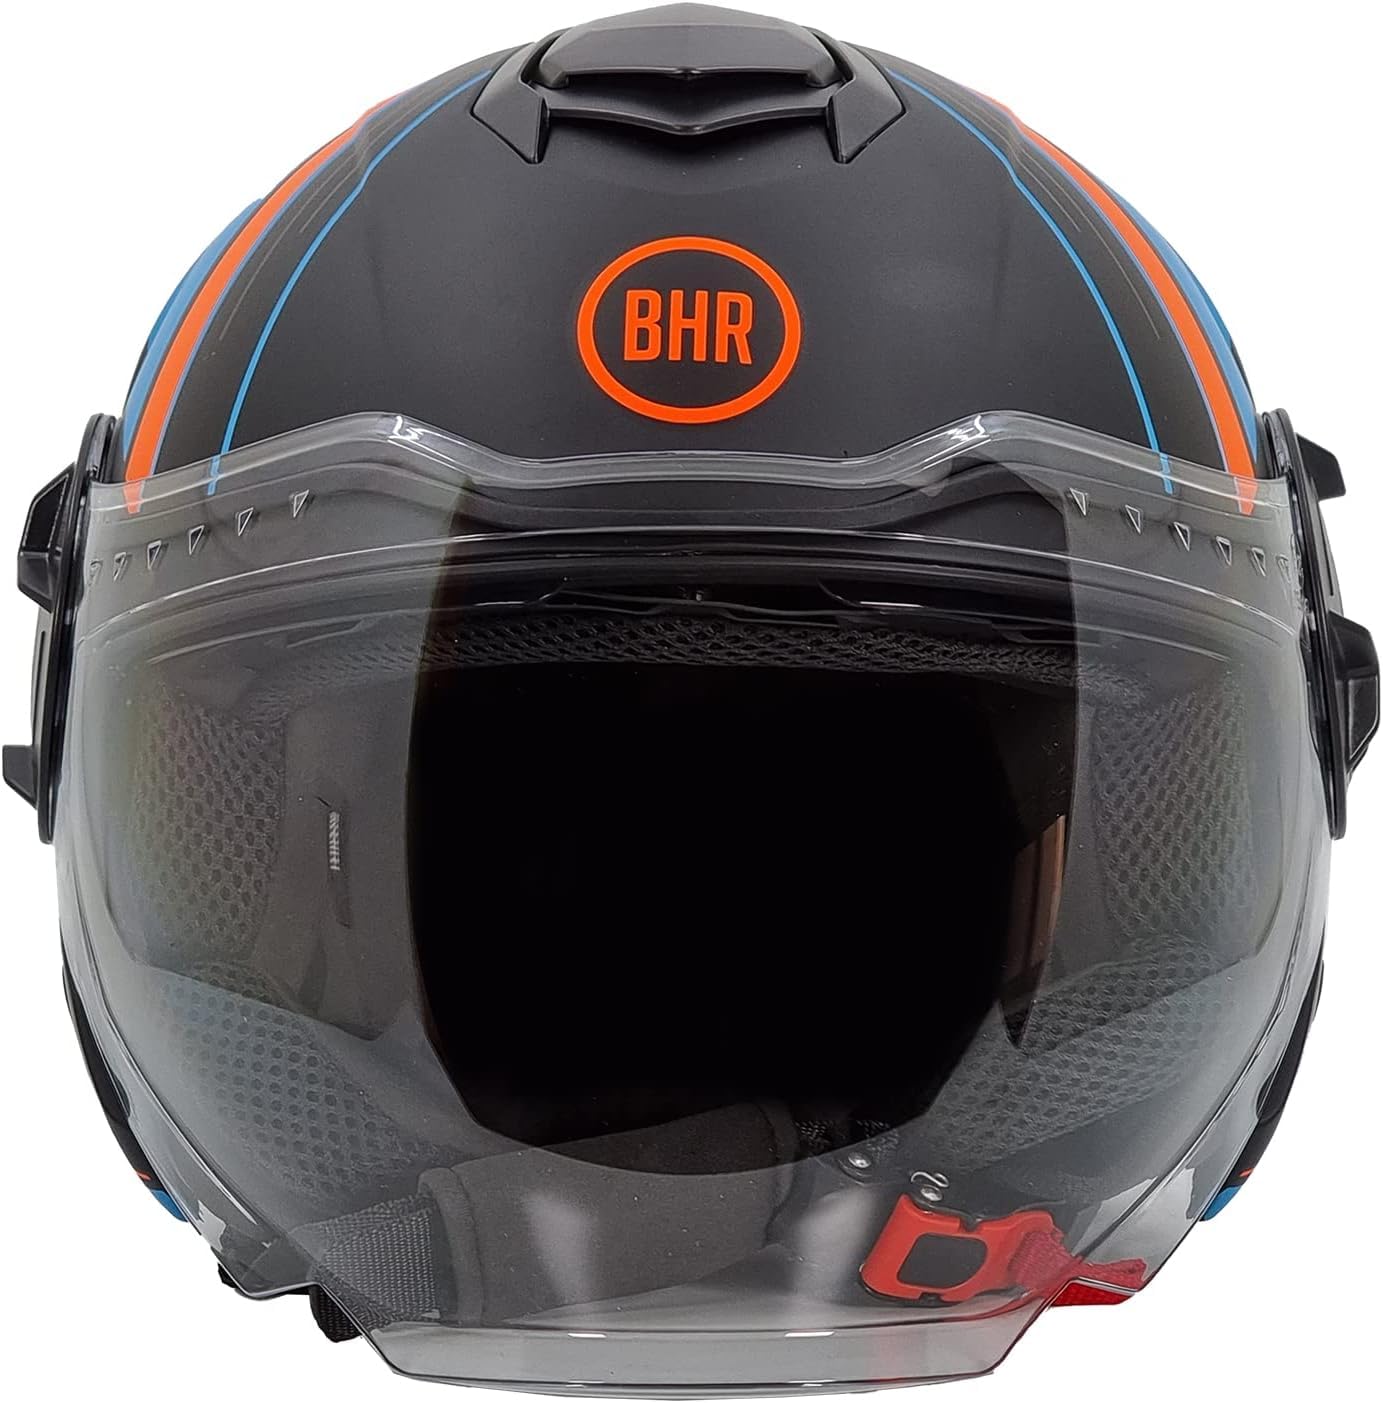 BHR Jet Helm Double Visor 830 Flash, Scooter Helm mit ECE 22.06 Zulassung, Leichter & komfortabler Jet Helm mit innenliegender Sonnenblende, Cool Black (Matt), L von BHR